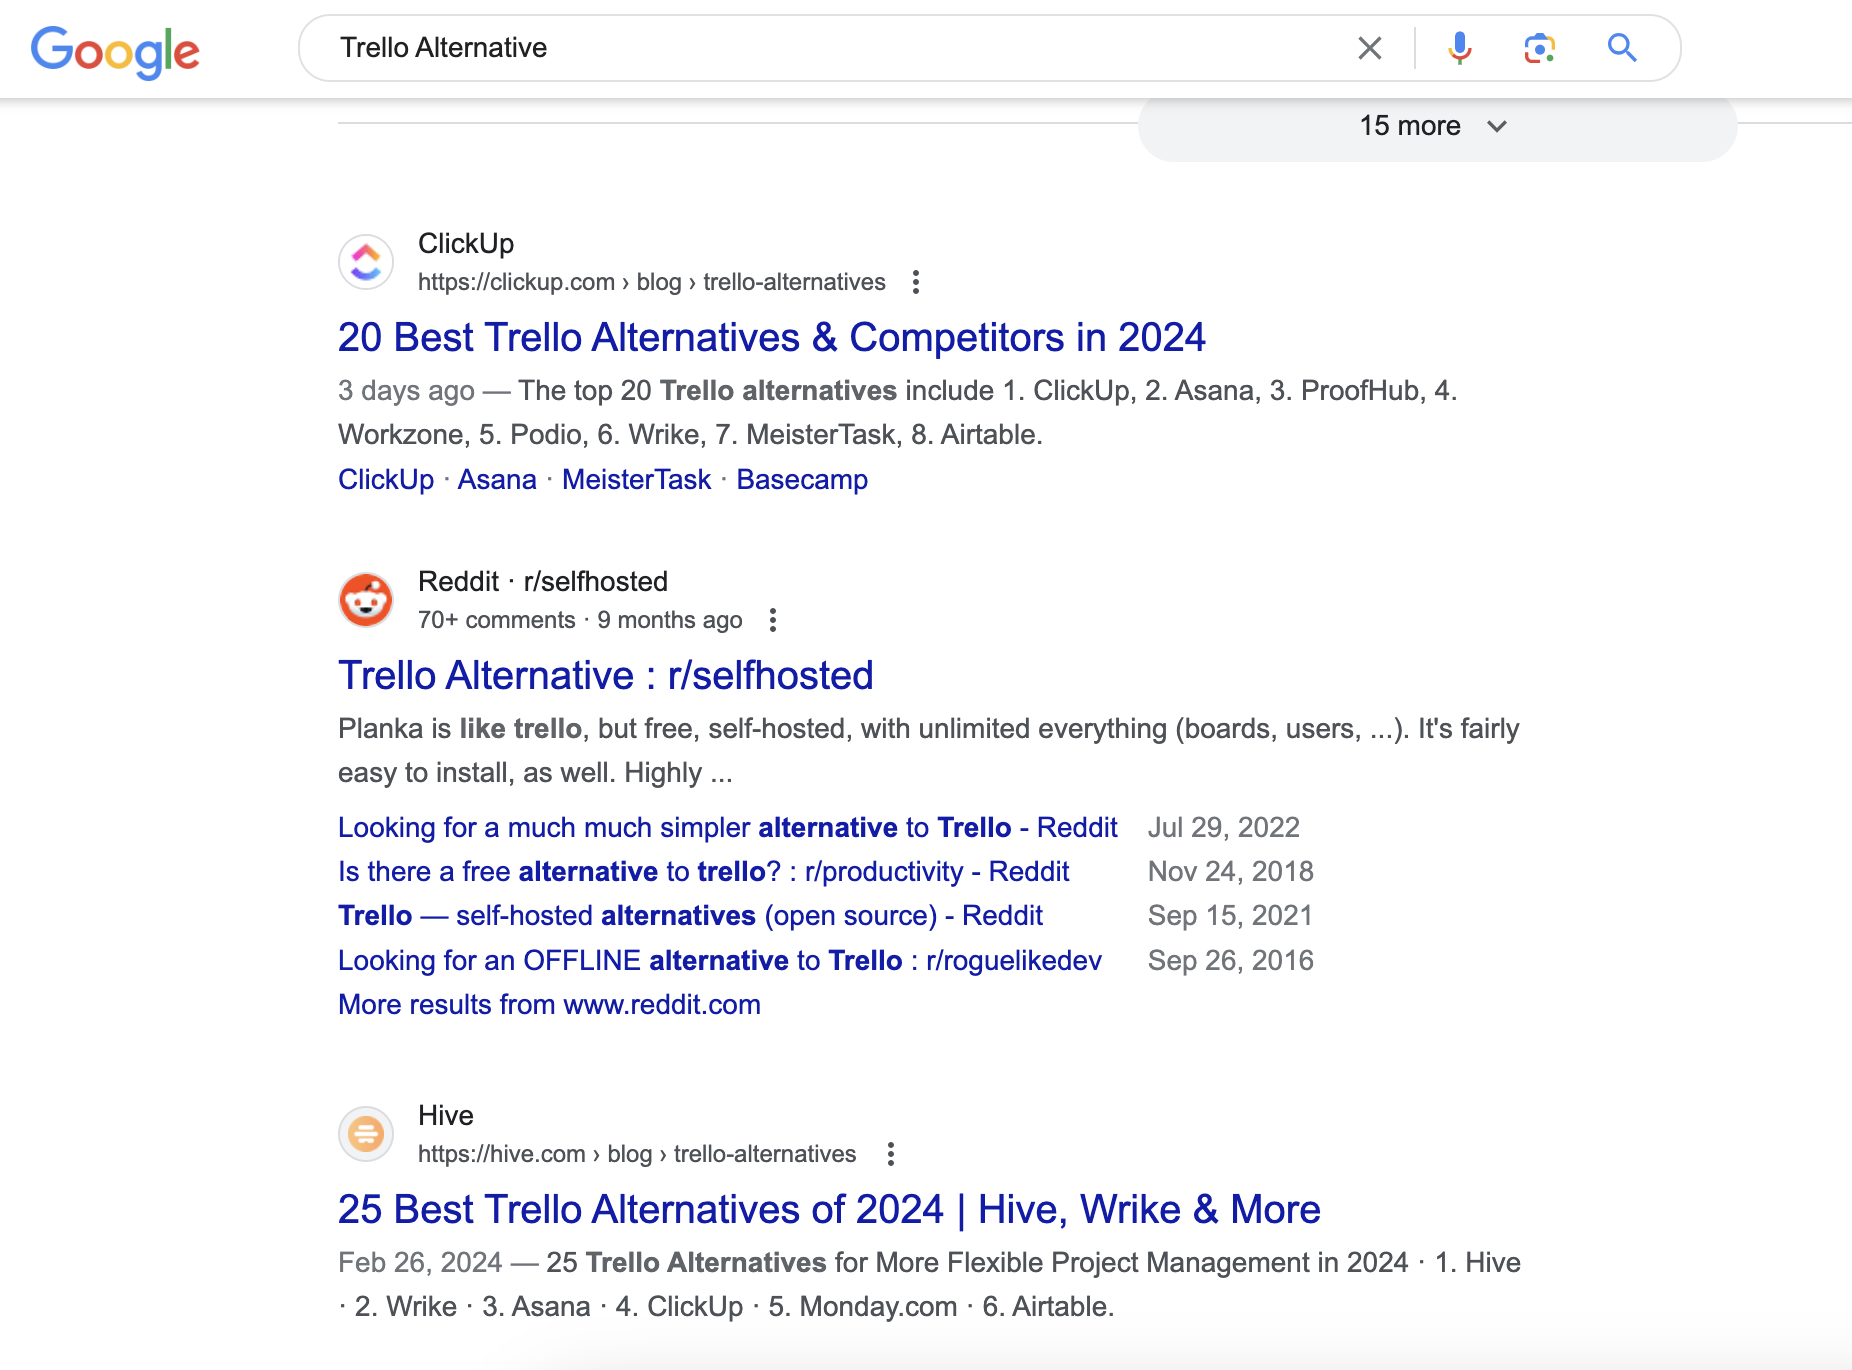 O postare subreddit despre alternativele Trello este, de asemenea, prezentată în mod proeminent în SERP-urile pentru acest termen de căutare